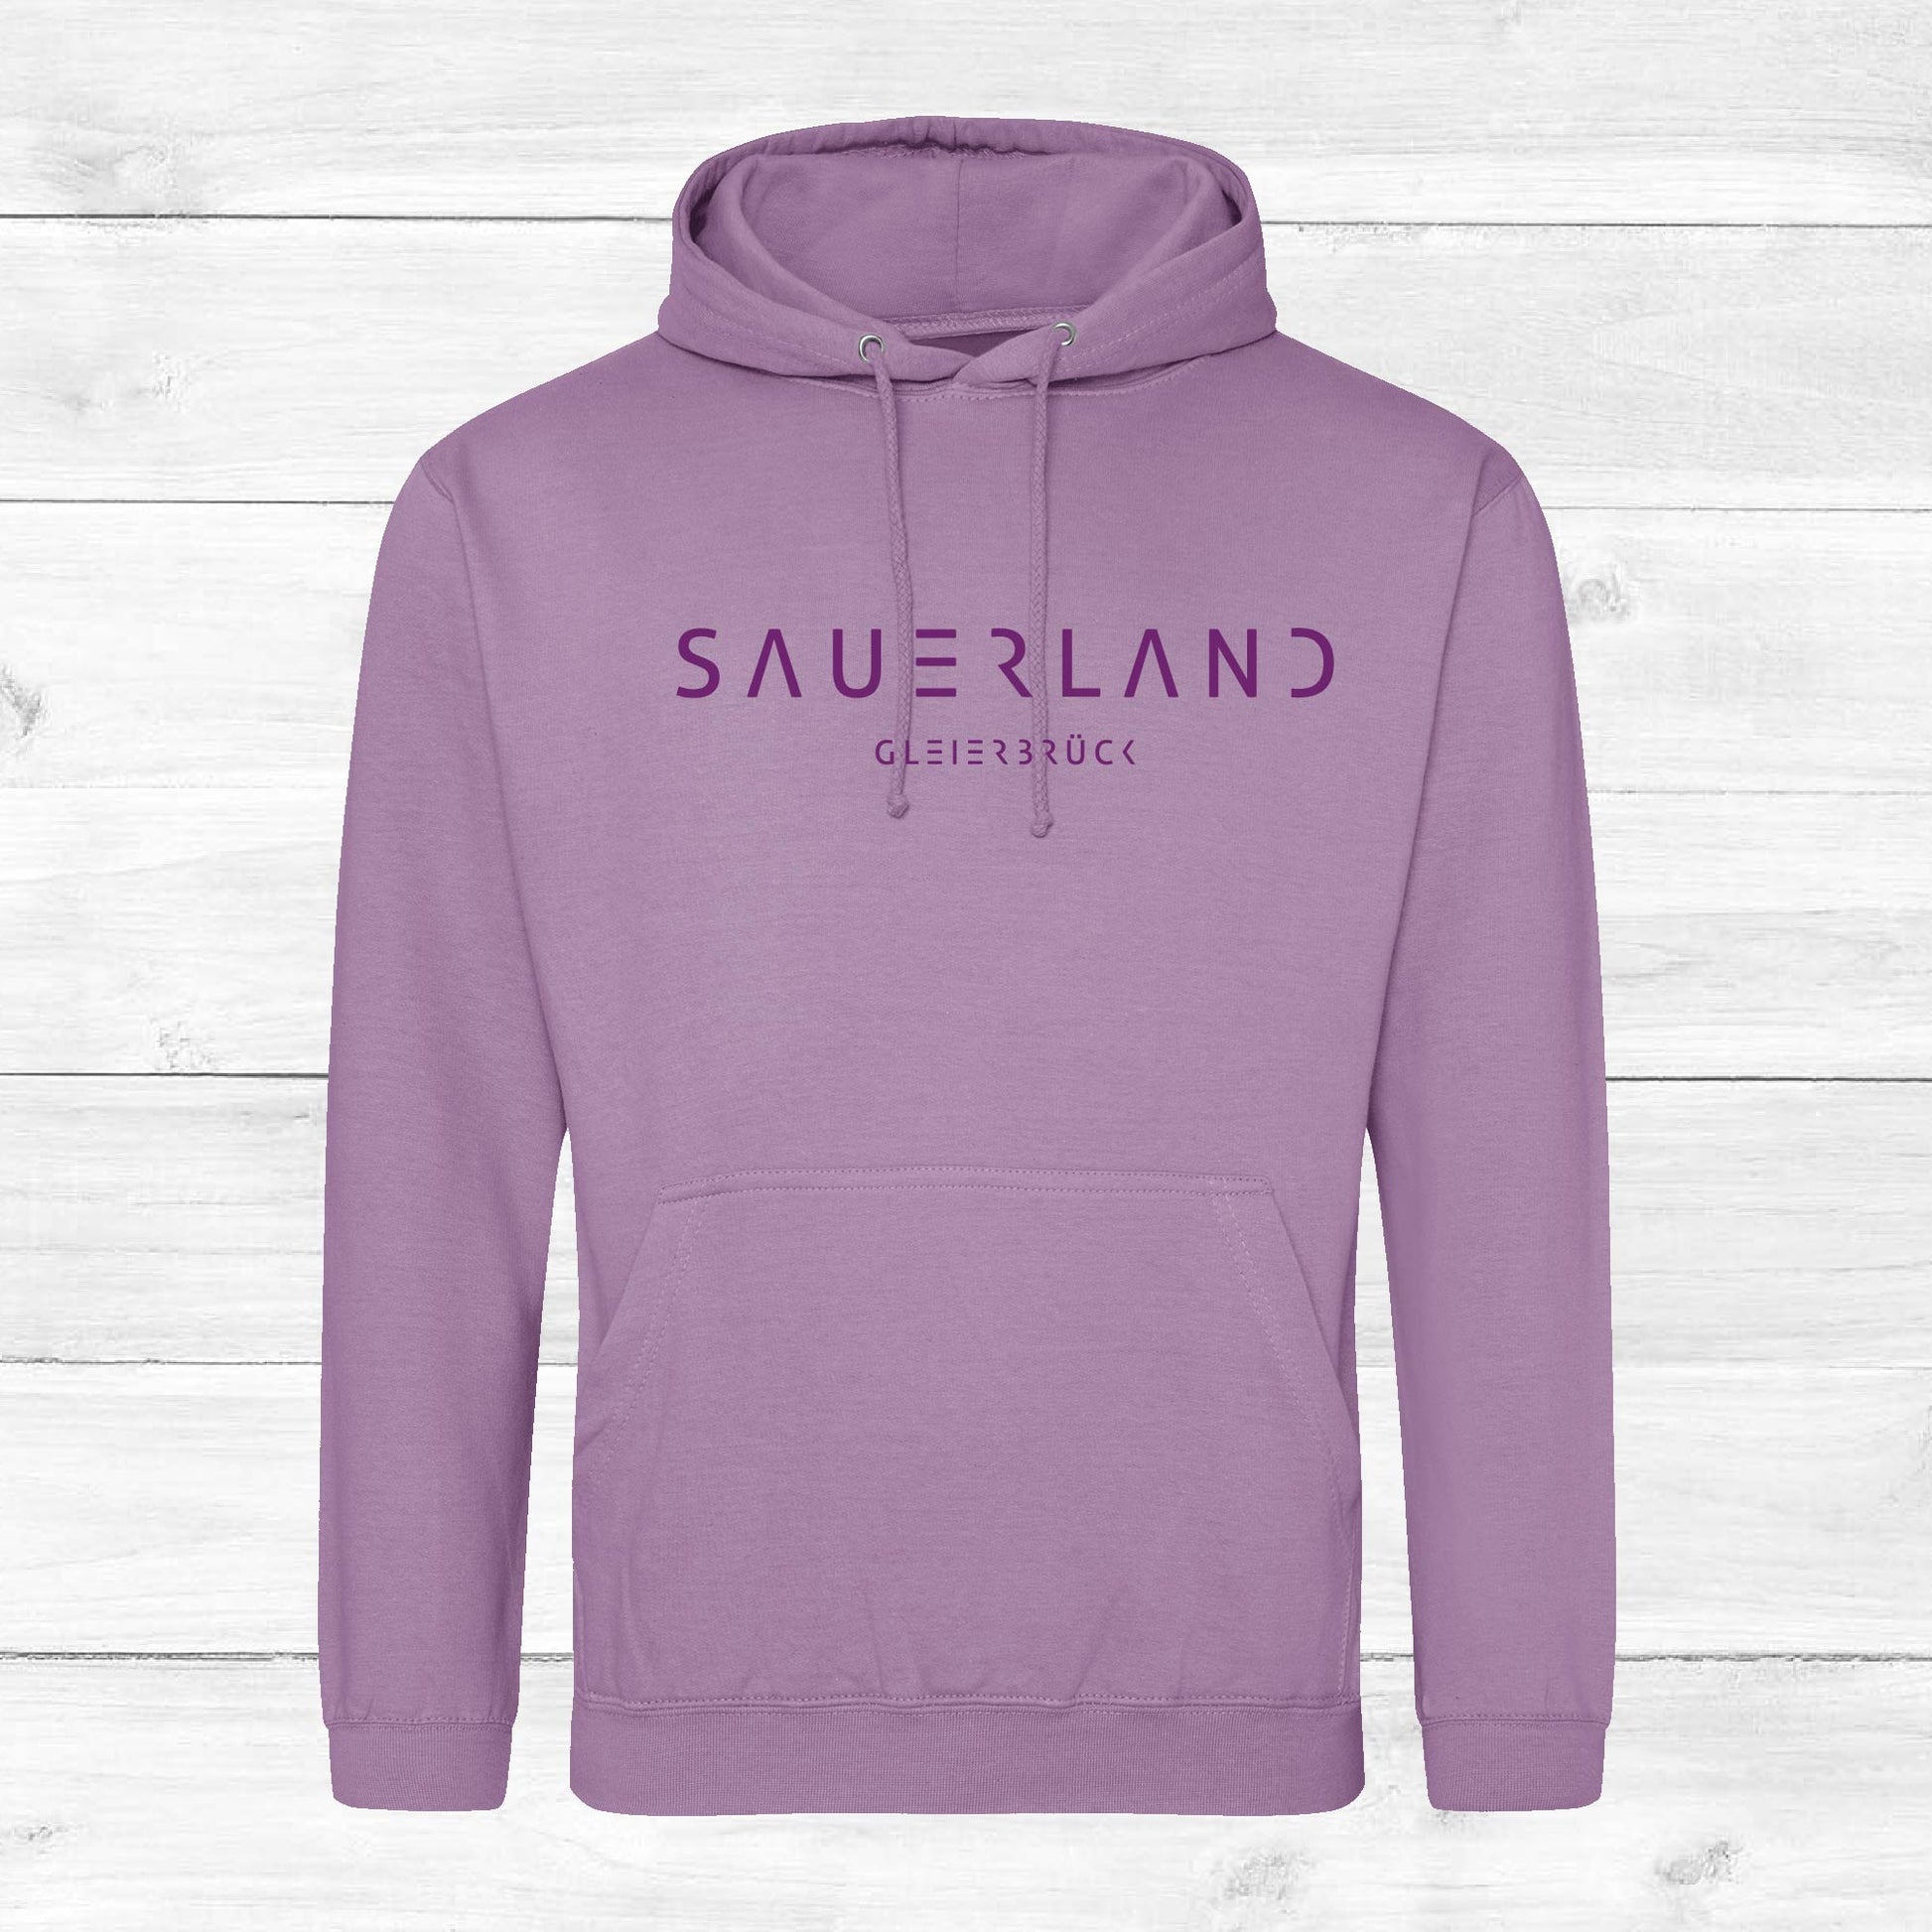 Sauerland Hoodie in Lavendel mit Aufdruck Sauerland Gleierbrück